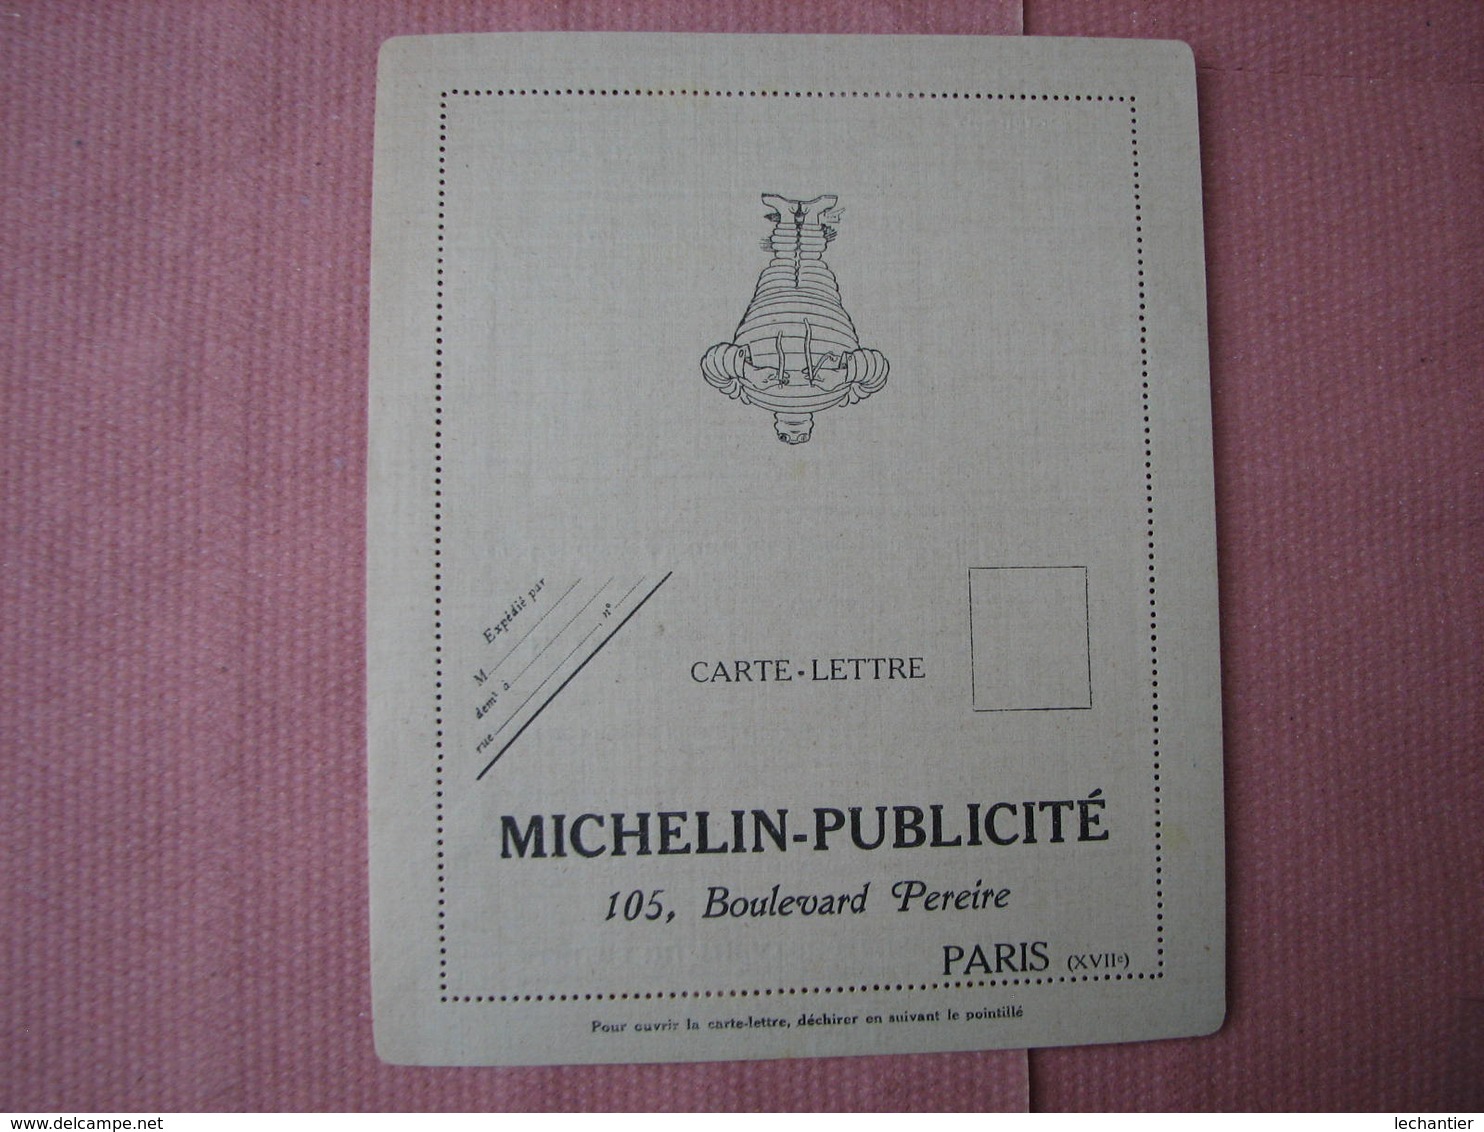 Michelin catalogue 1913 " pour démonter + enveloppe de commande